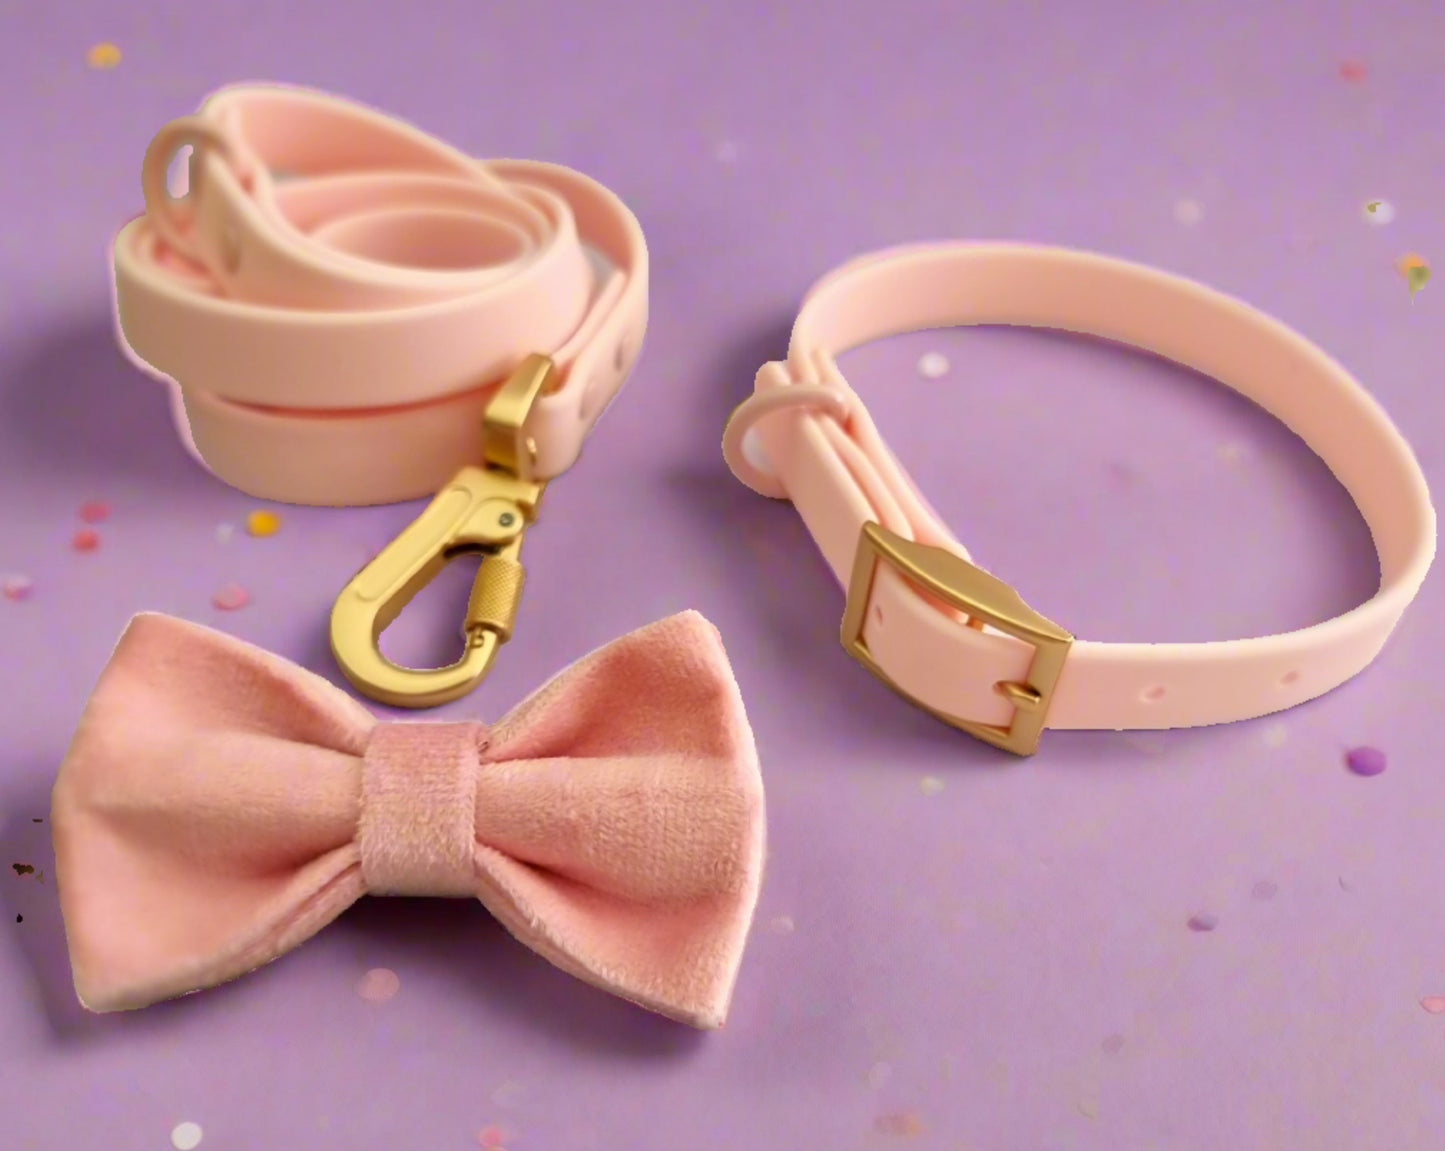 Light pink velvet dog bow tie